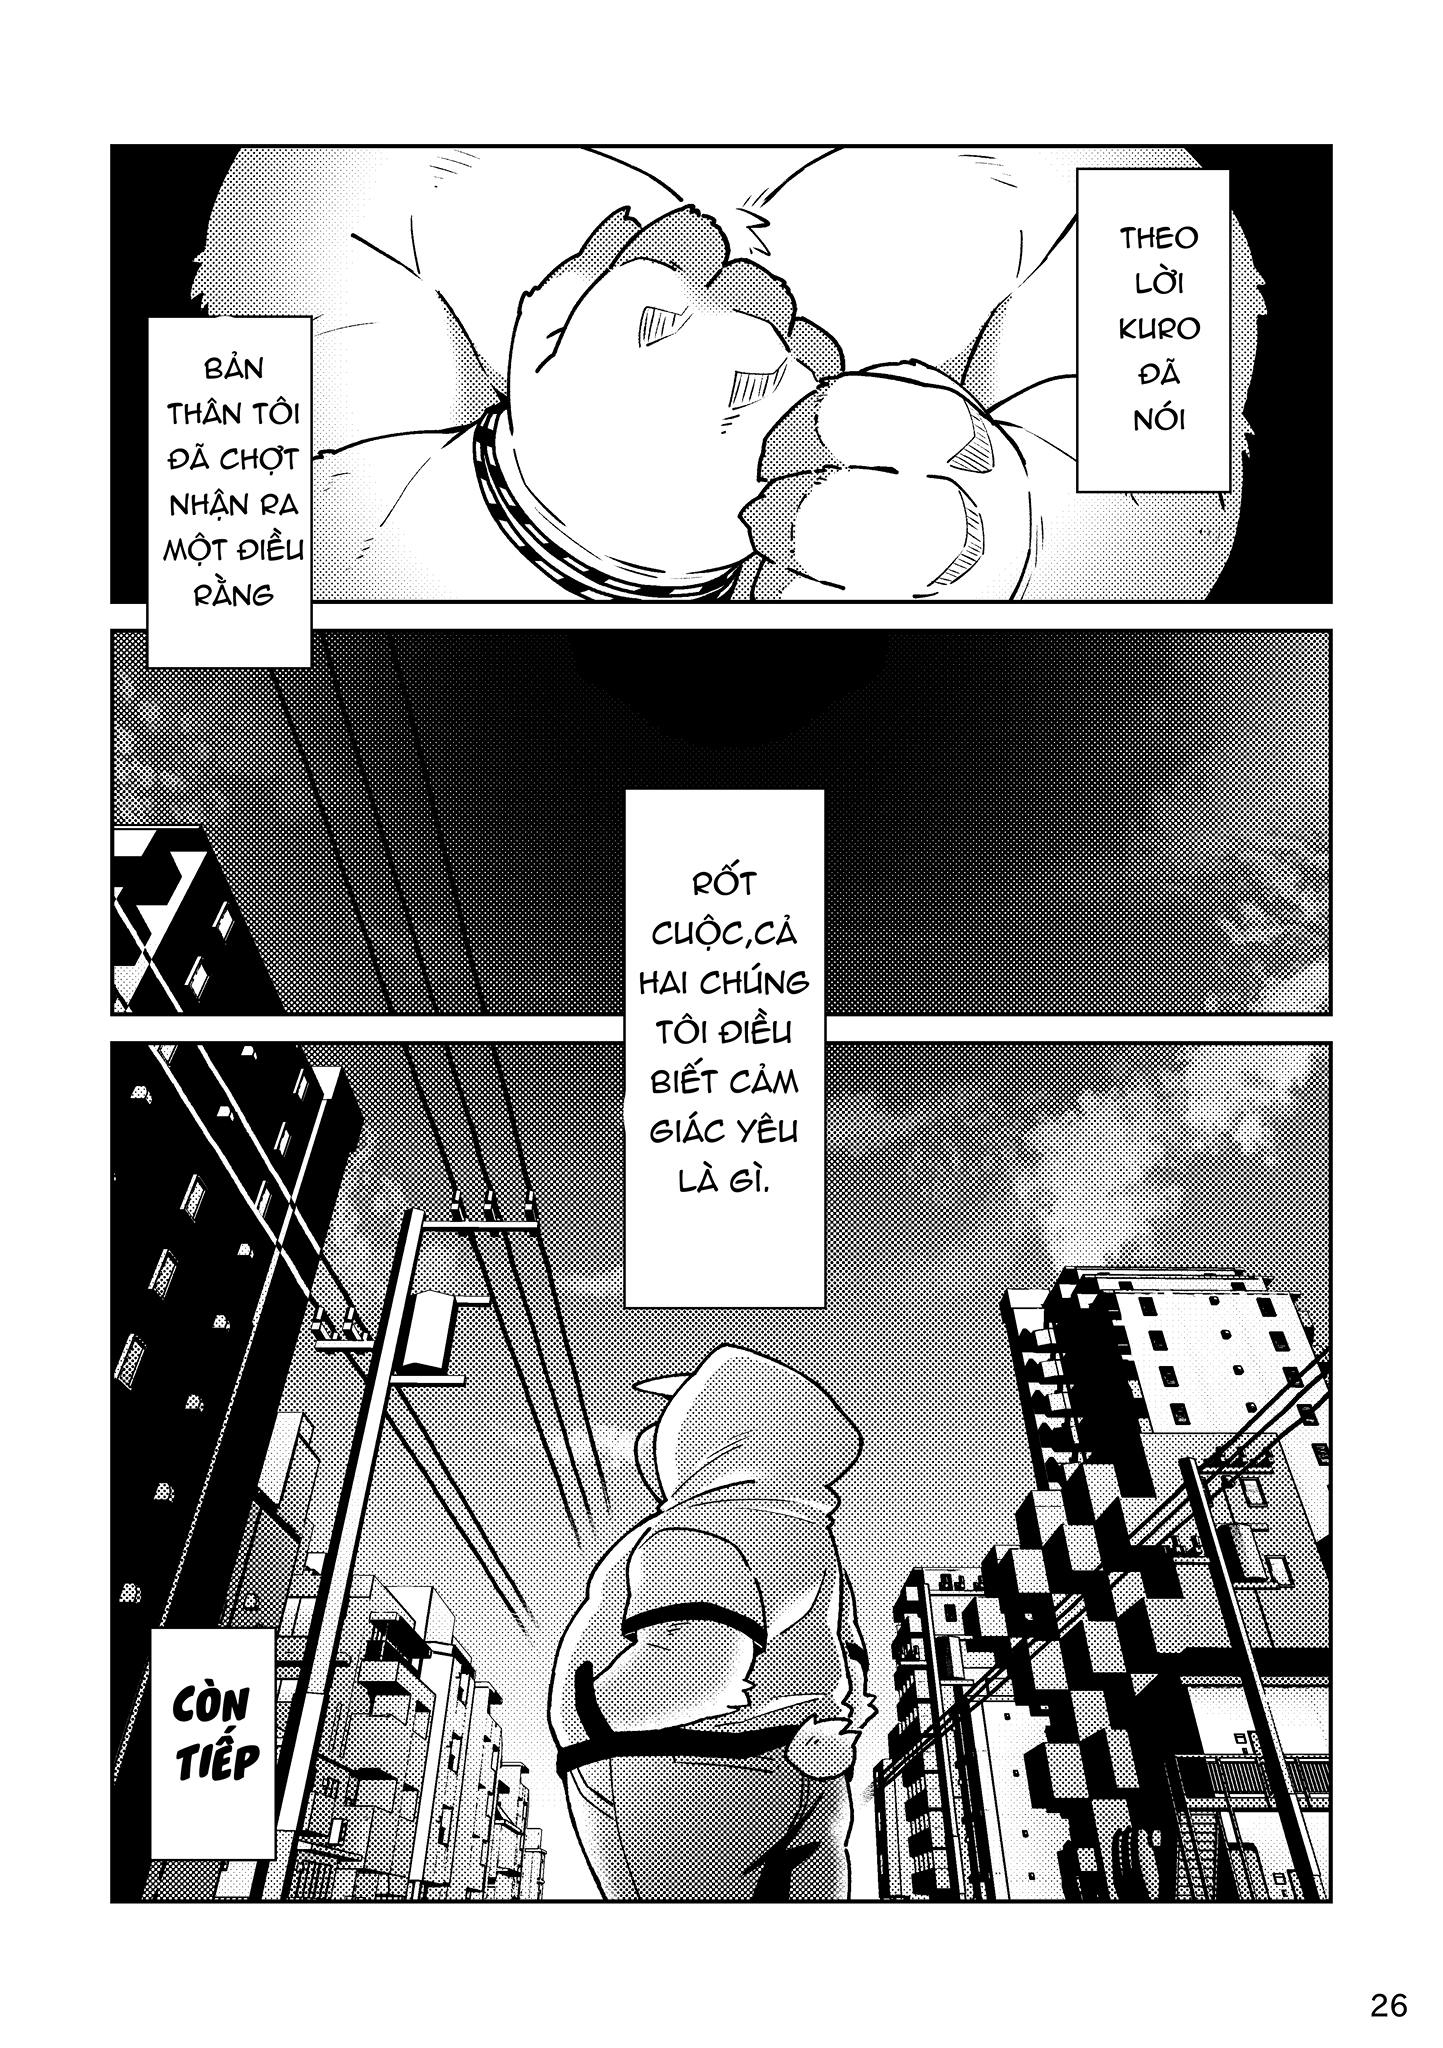 [Hinami] Shiro và Kuro  2 [VN] - Trang 27